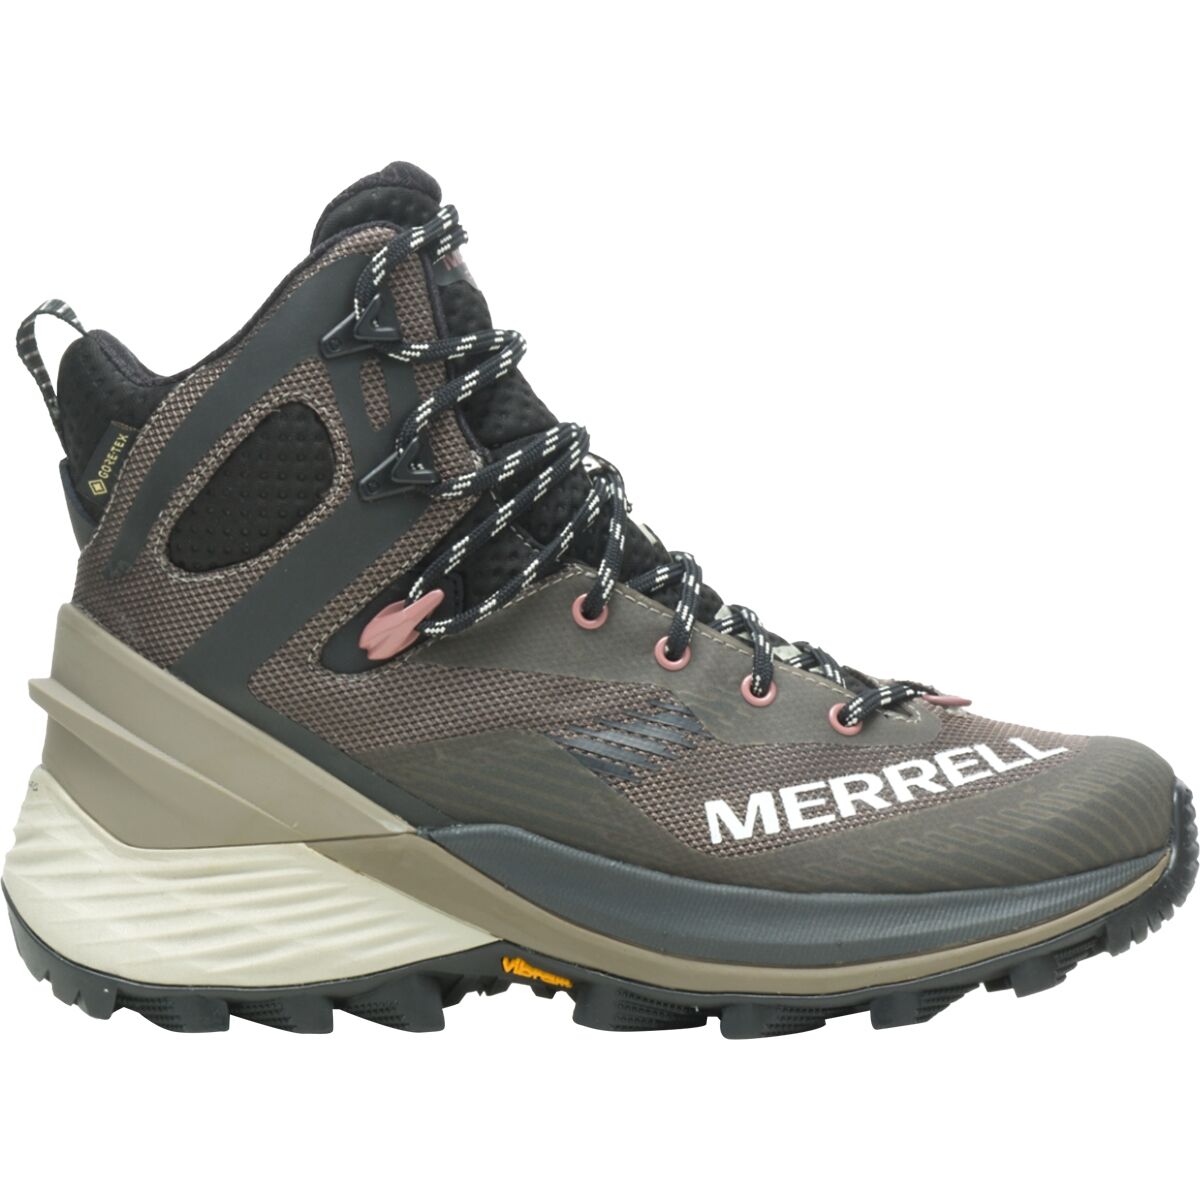 Merrell Rogue Hiker Mid GTX Boot - Women's